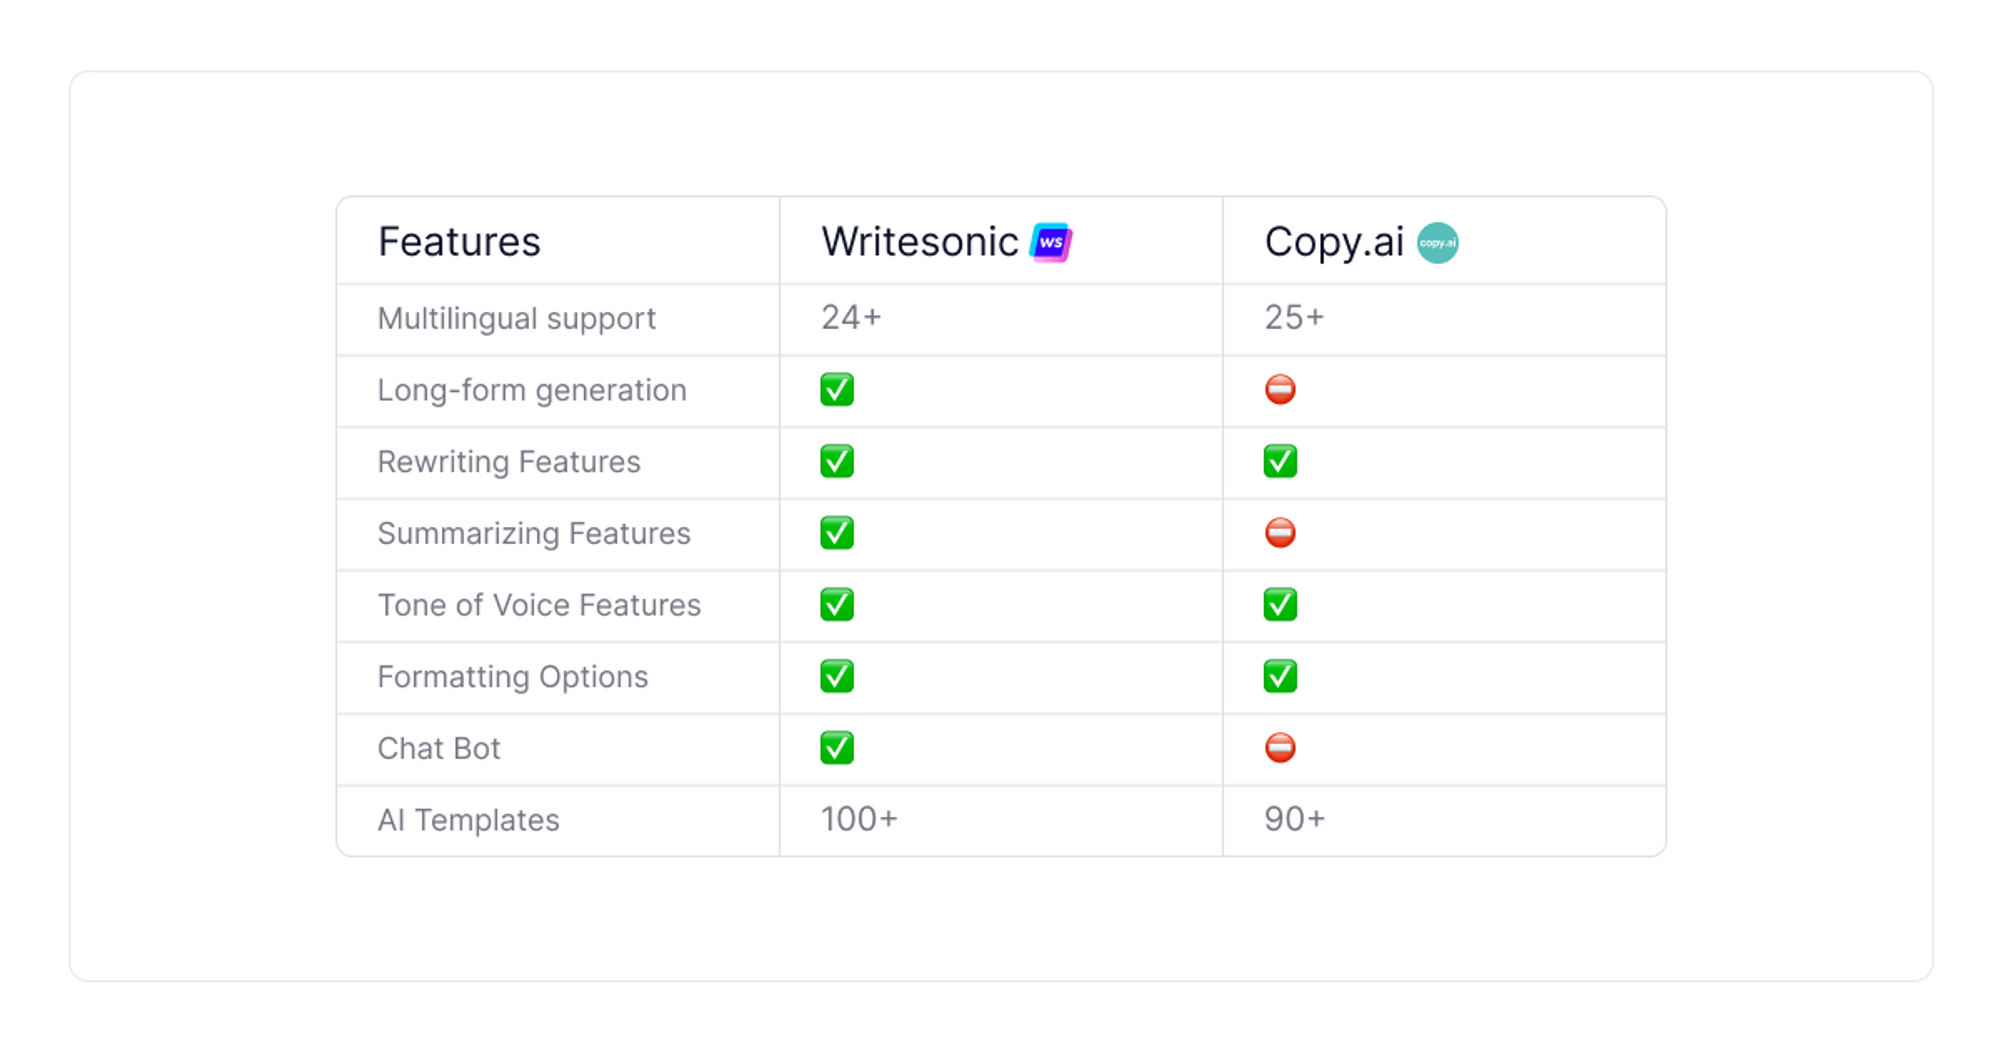 writesonic-vs-copy-ai-comparison-table